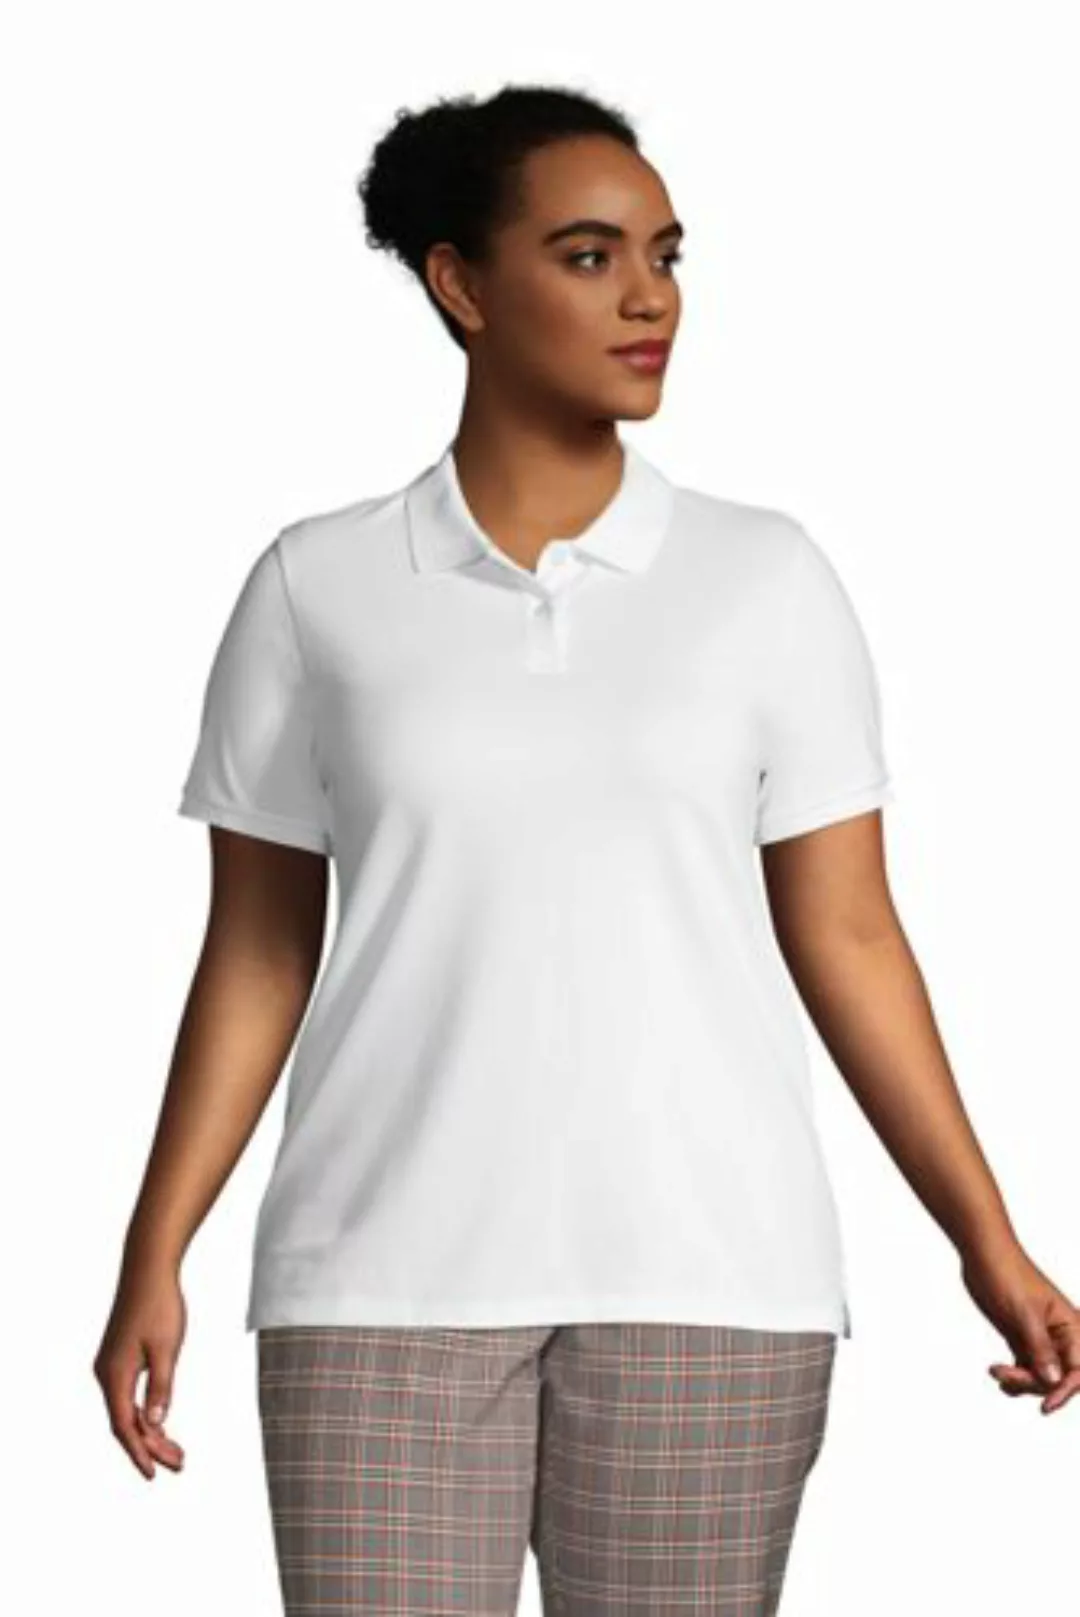 Piqué-Poloshirt in großen Größen, Damen, Größe: 56-58 Plusgrößen, Weiß, Bau günstig online kaufen